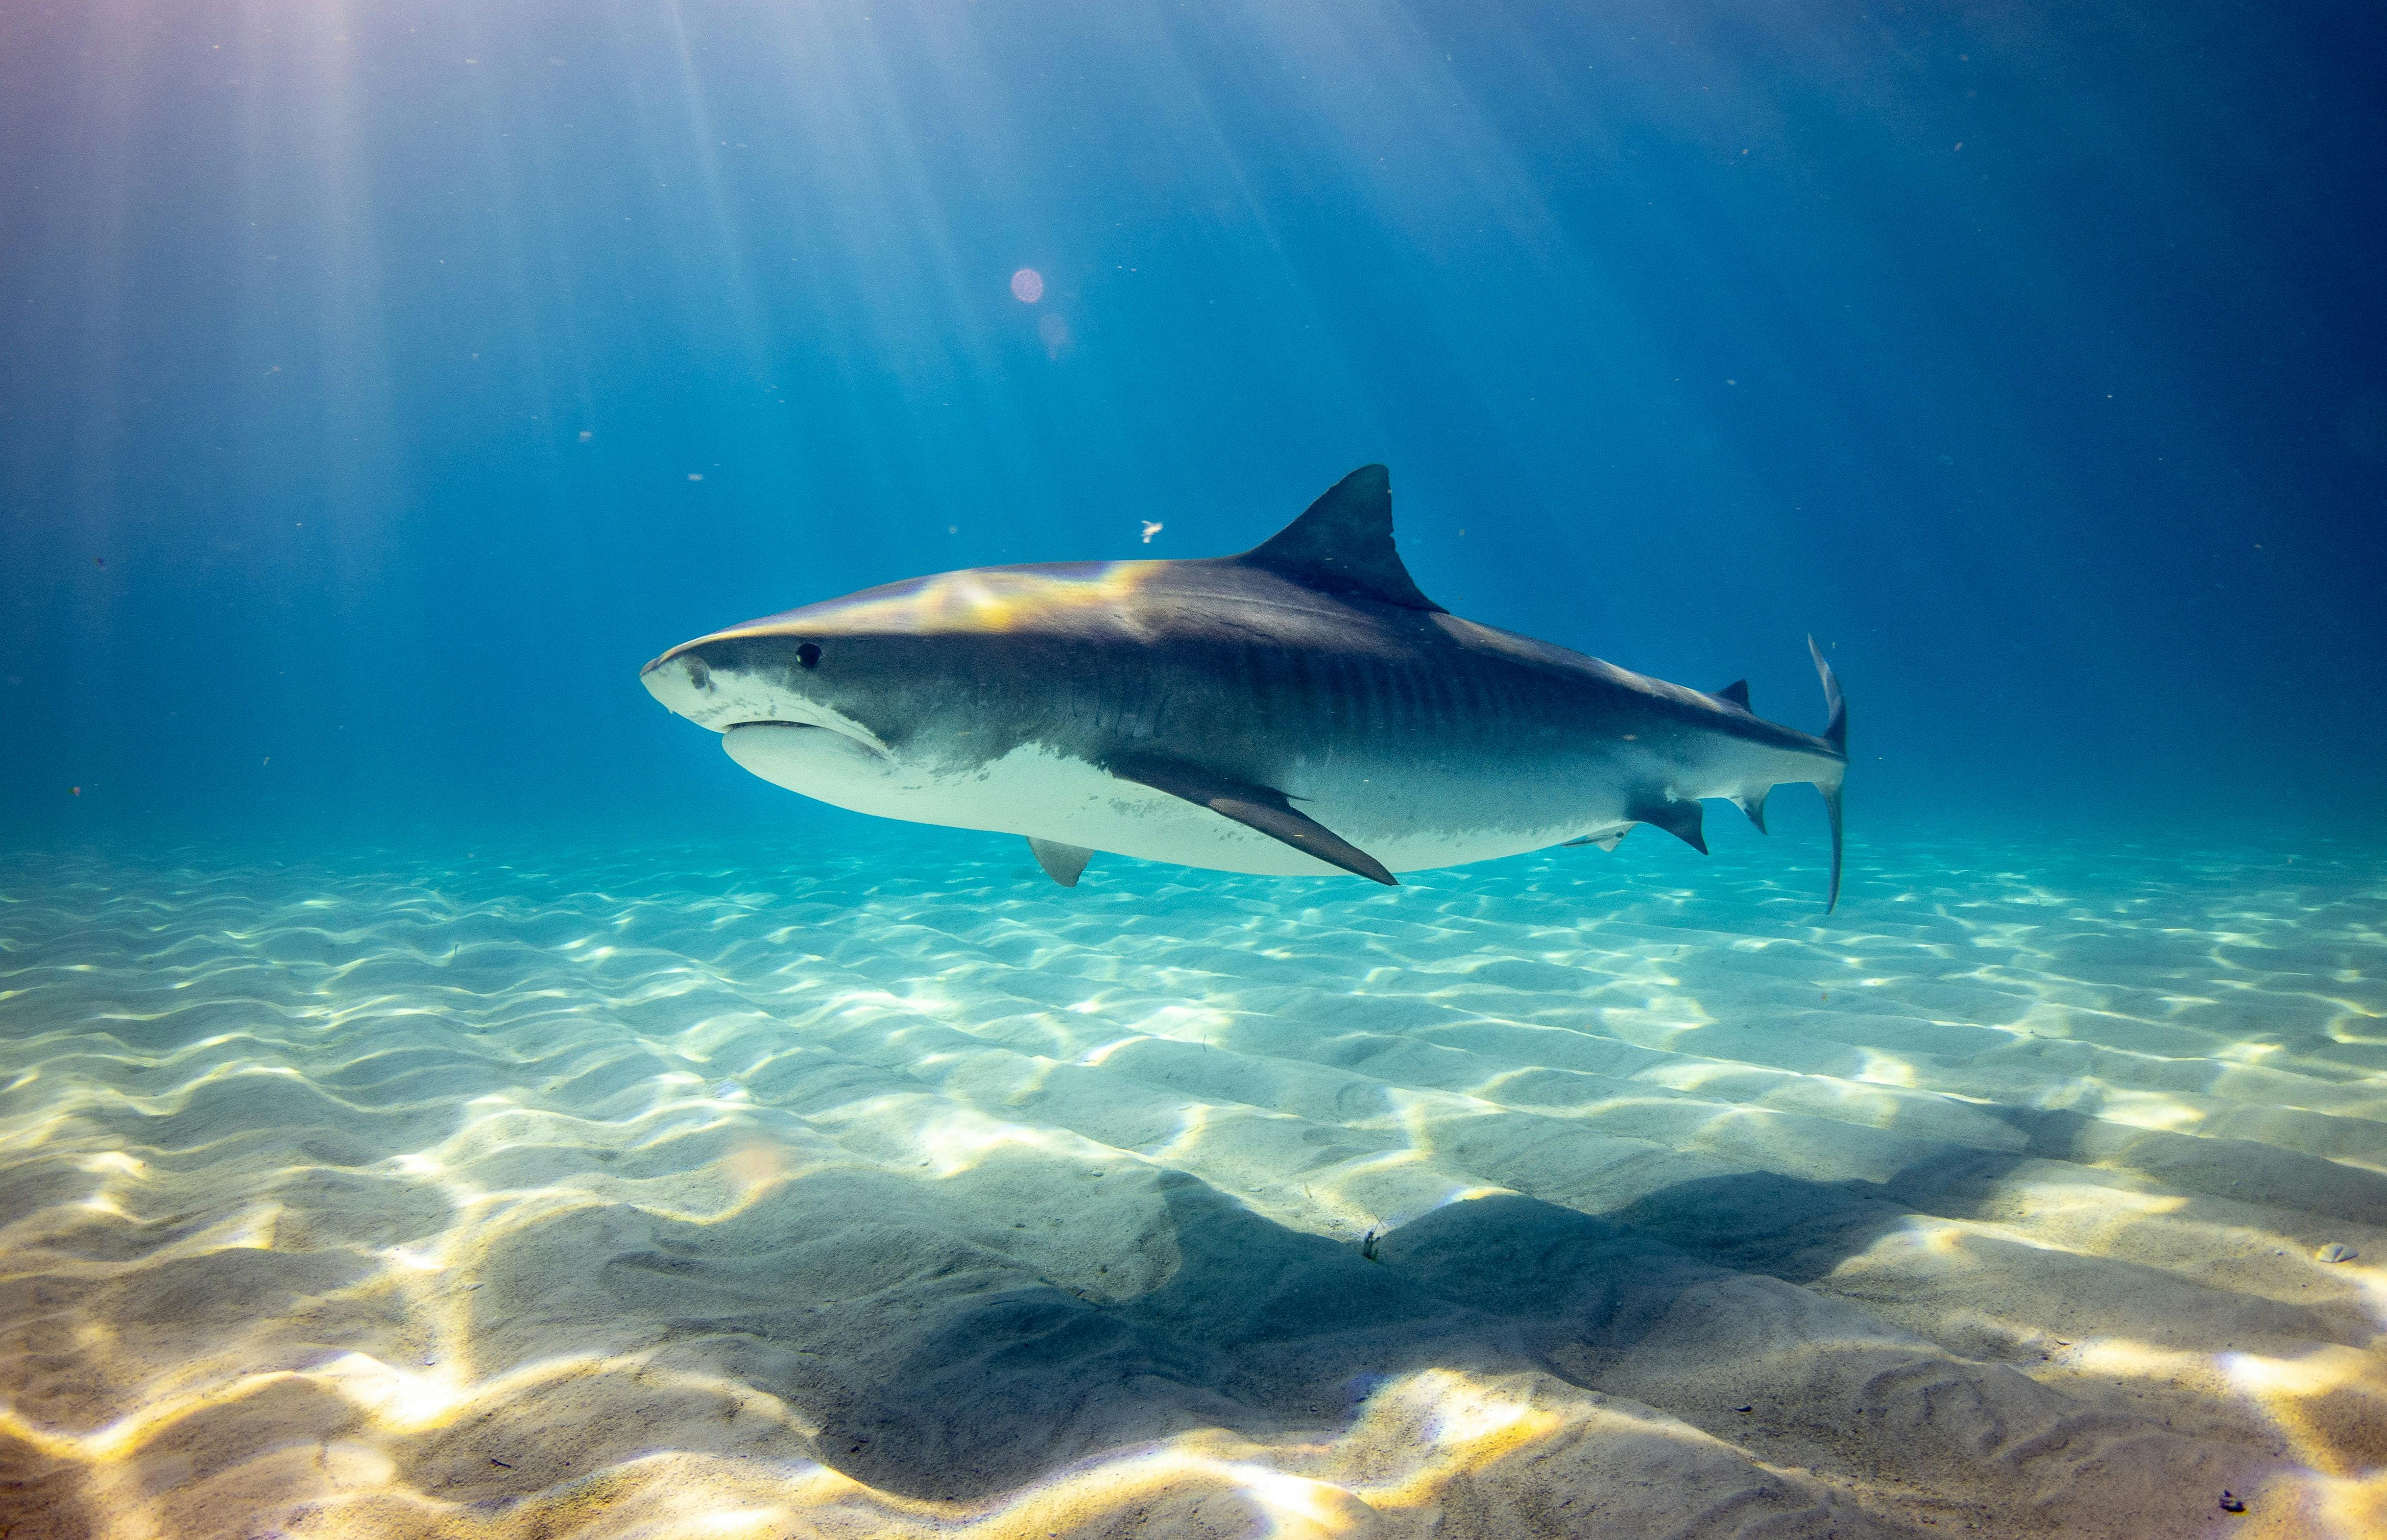 Implicazioni e tendenze dell'industria degli squali